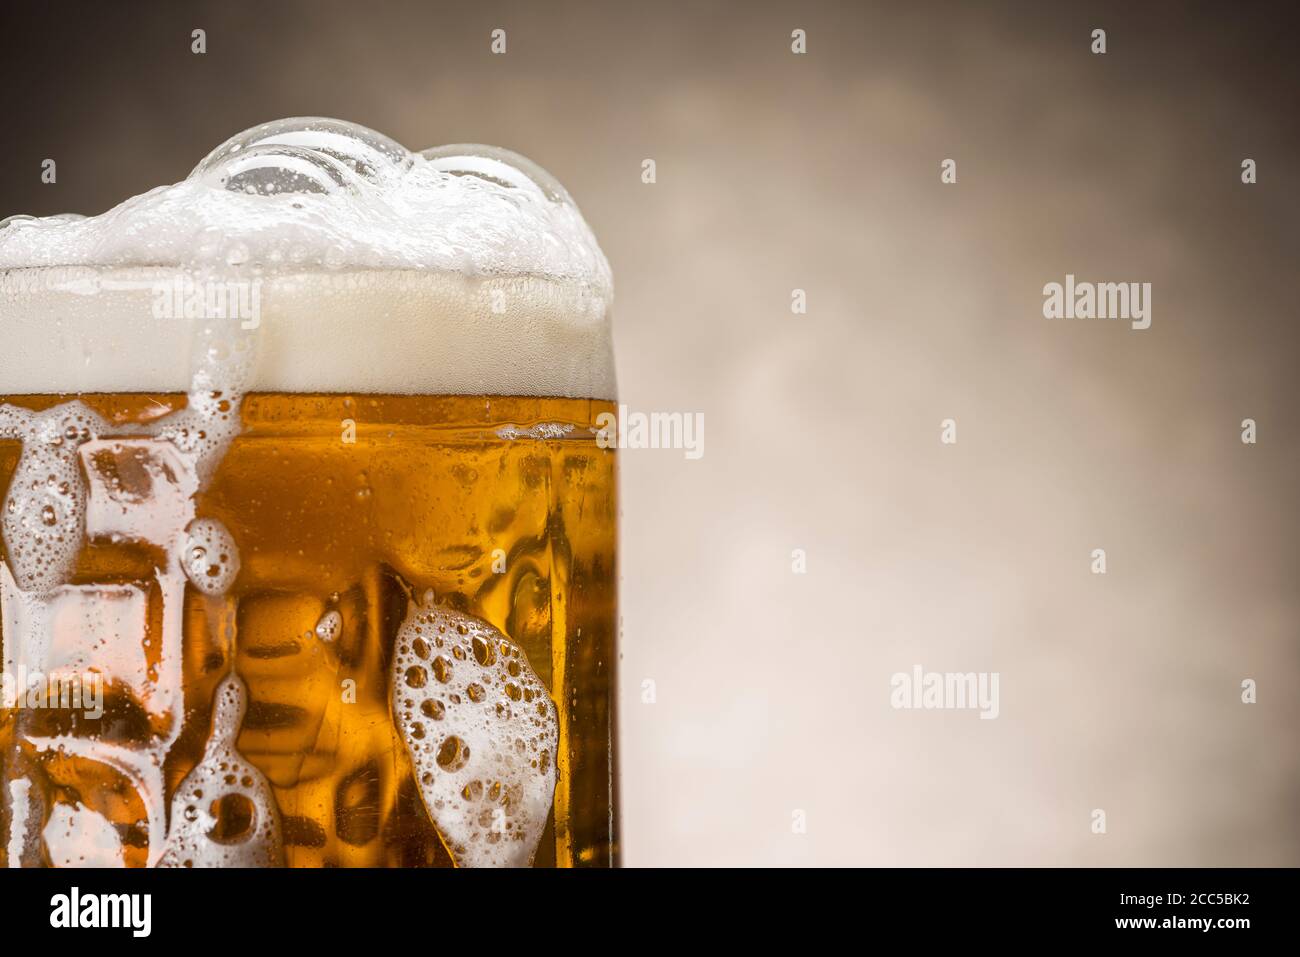 primo piano di pinta di birra con schiuma su sfondo rustico Foto Stock